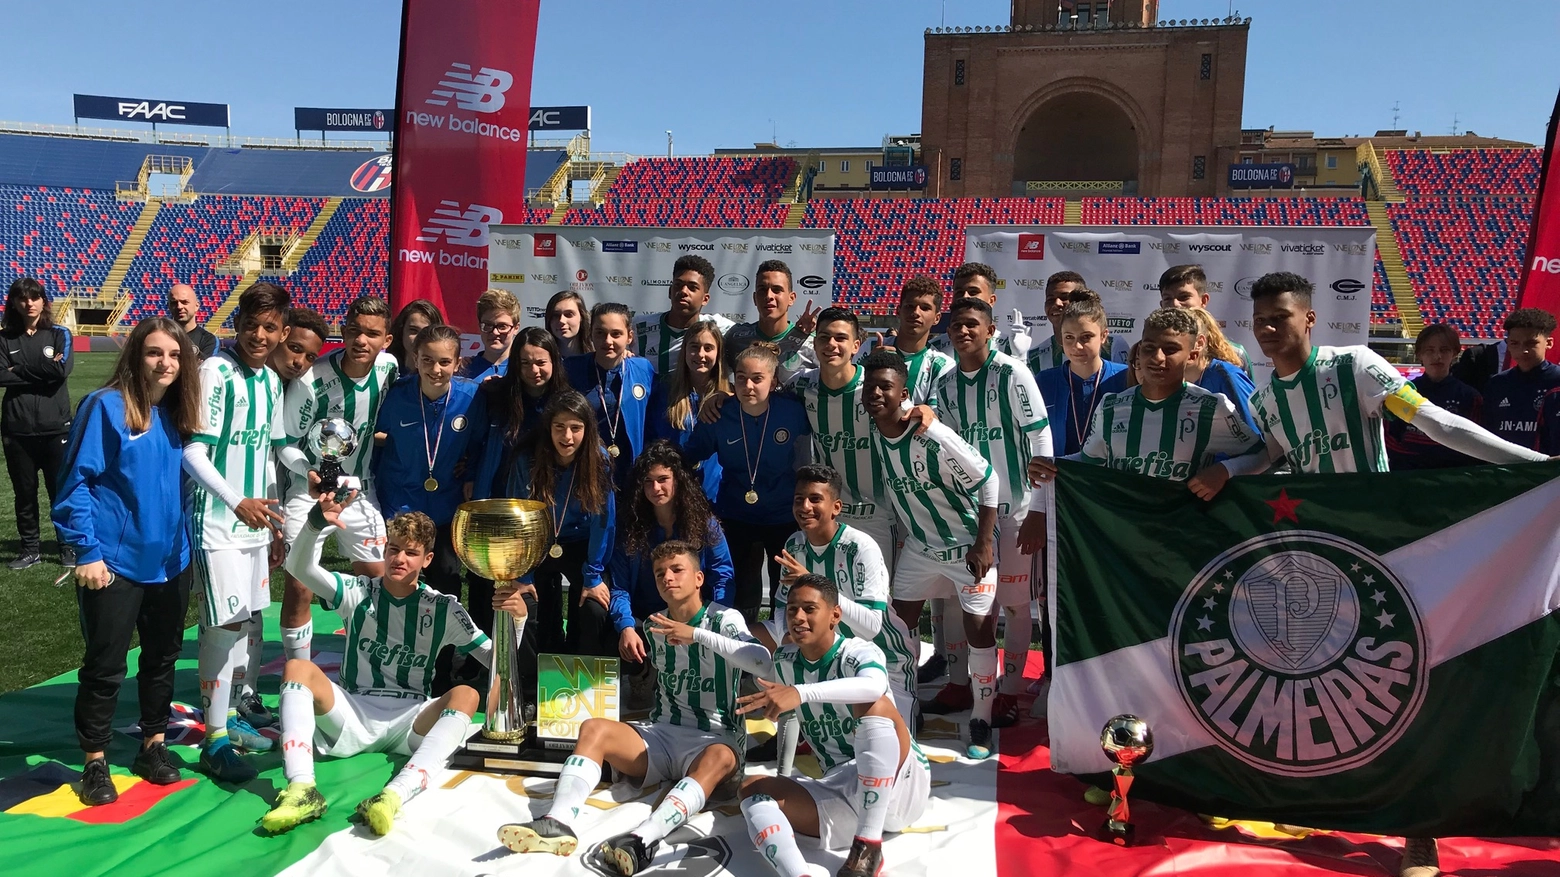 Inter e Palmeiras, vincitrici di We Love Football 2018, festeggiano insieme la vittoria